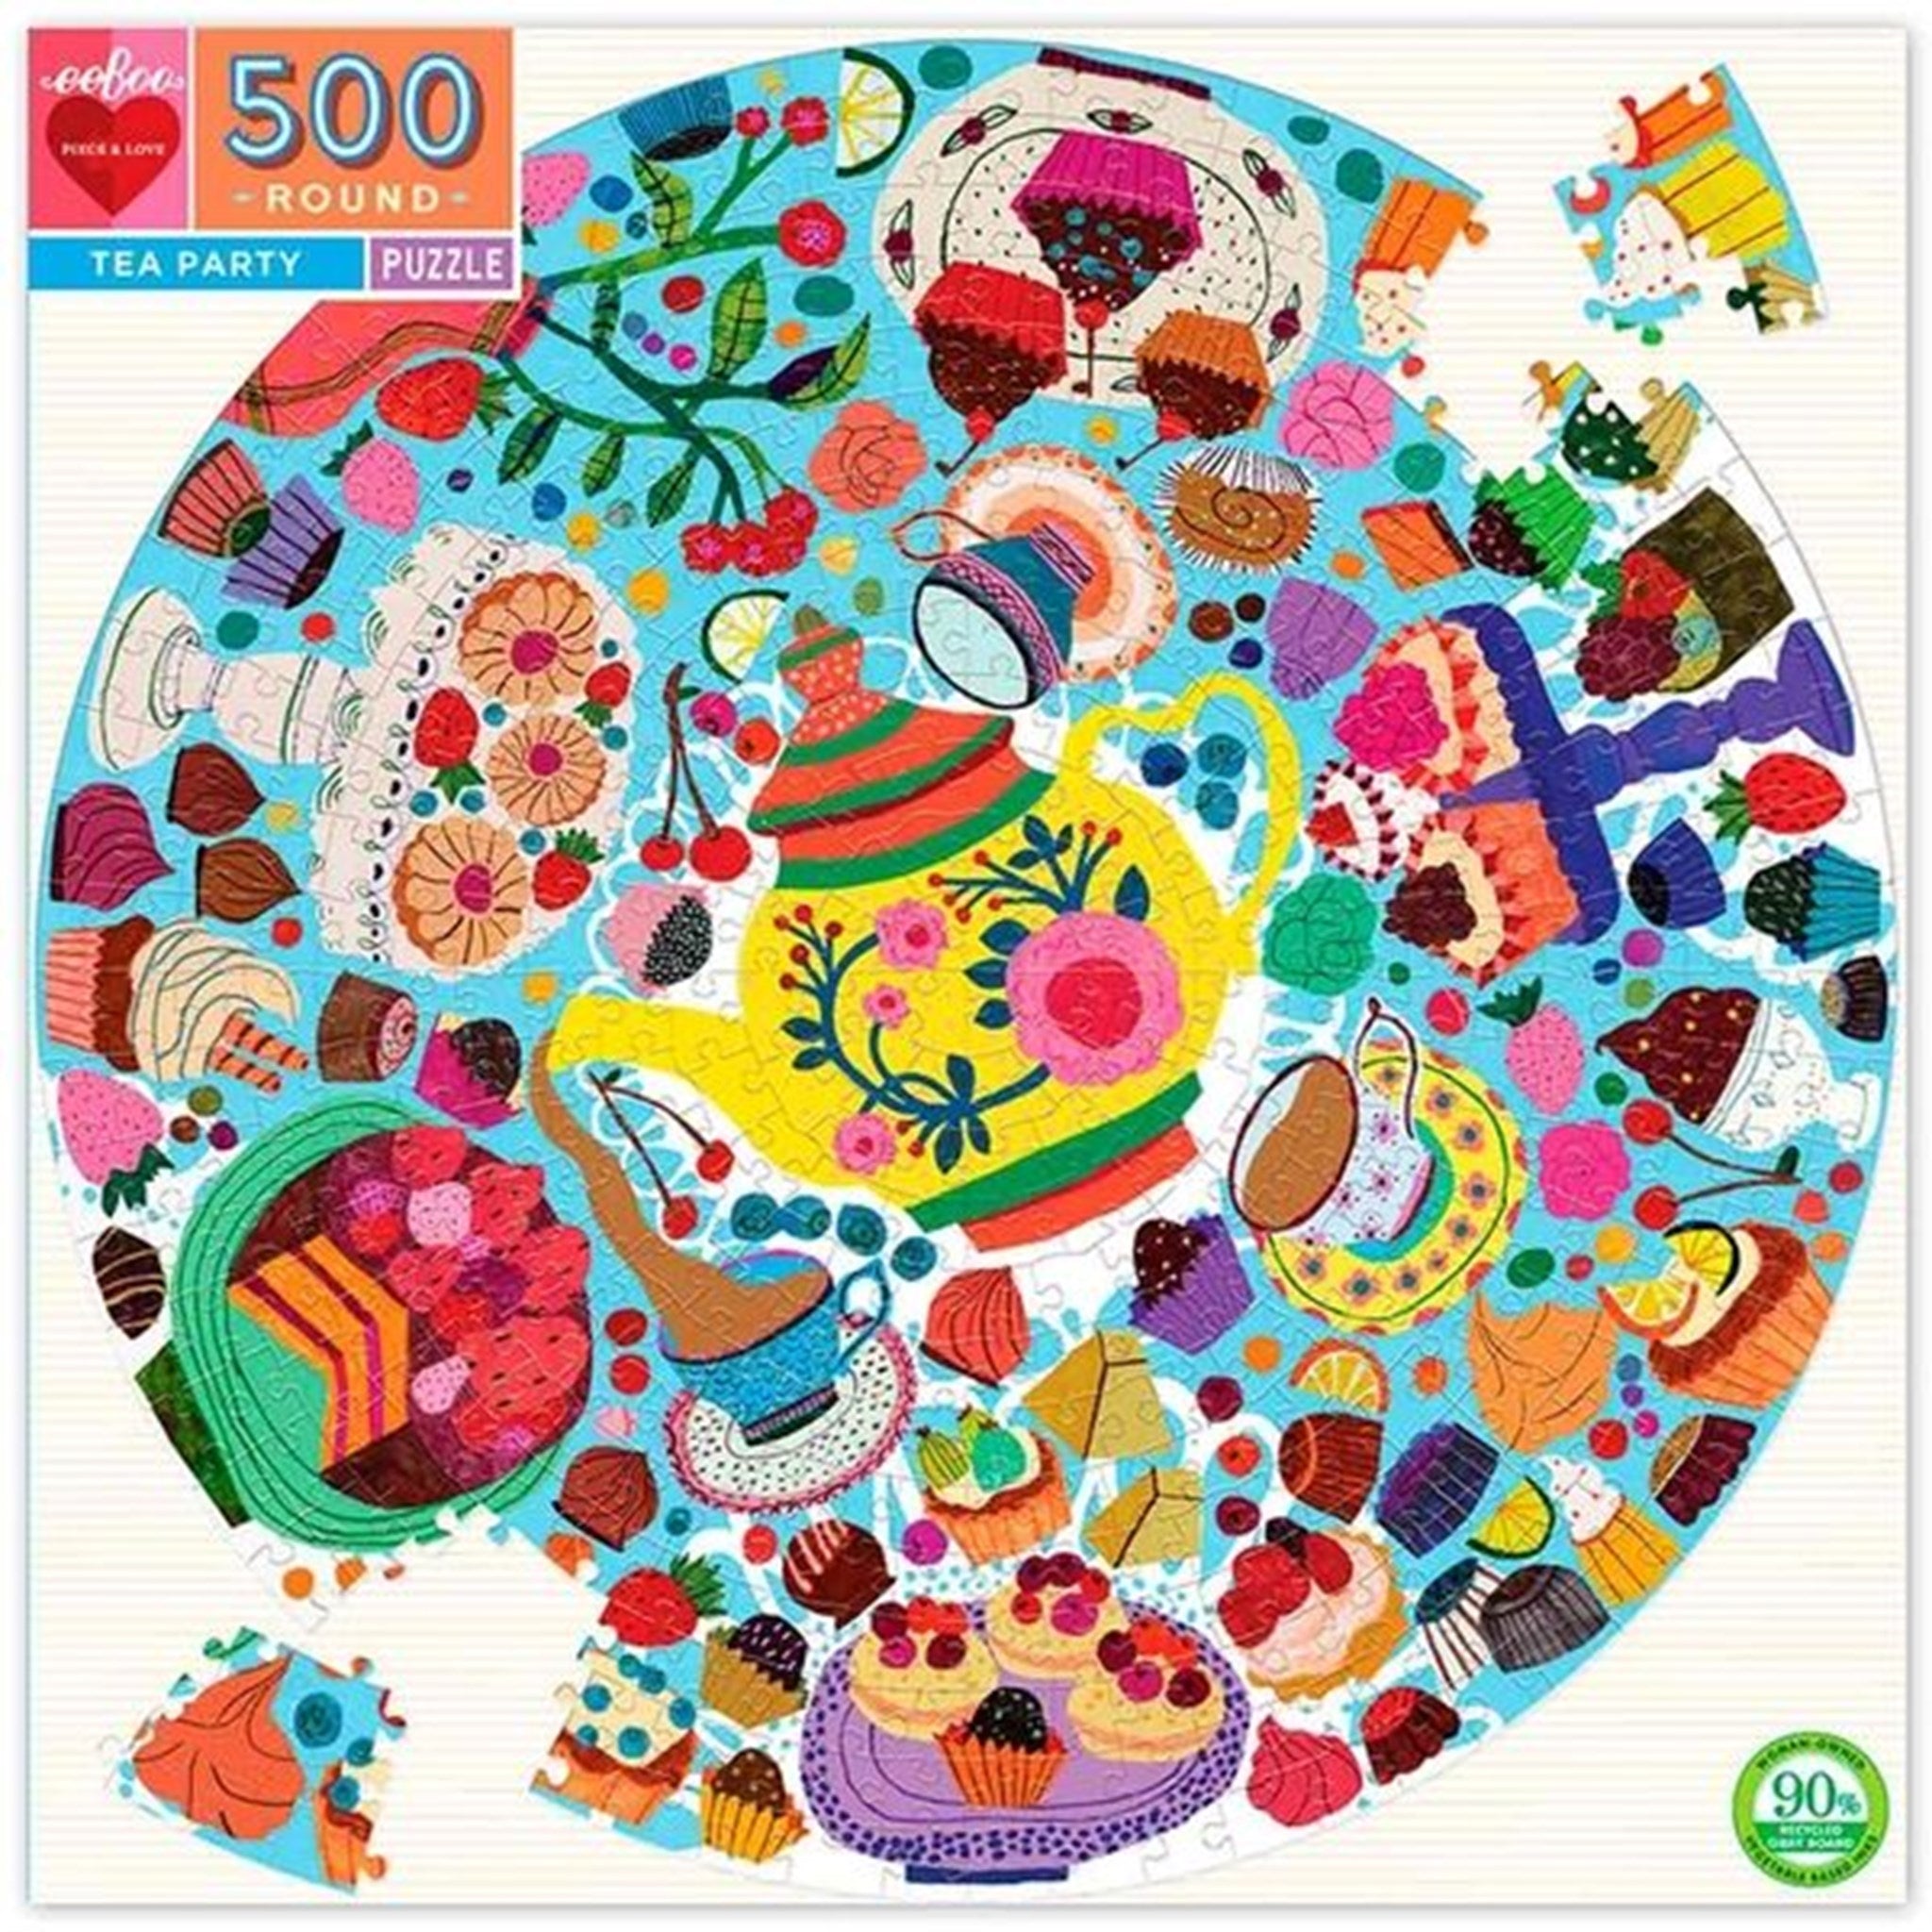 Eeboo Puzzle 500 Pieces - Tea Party